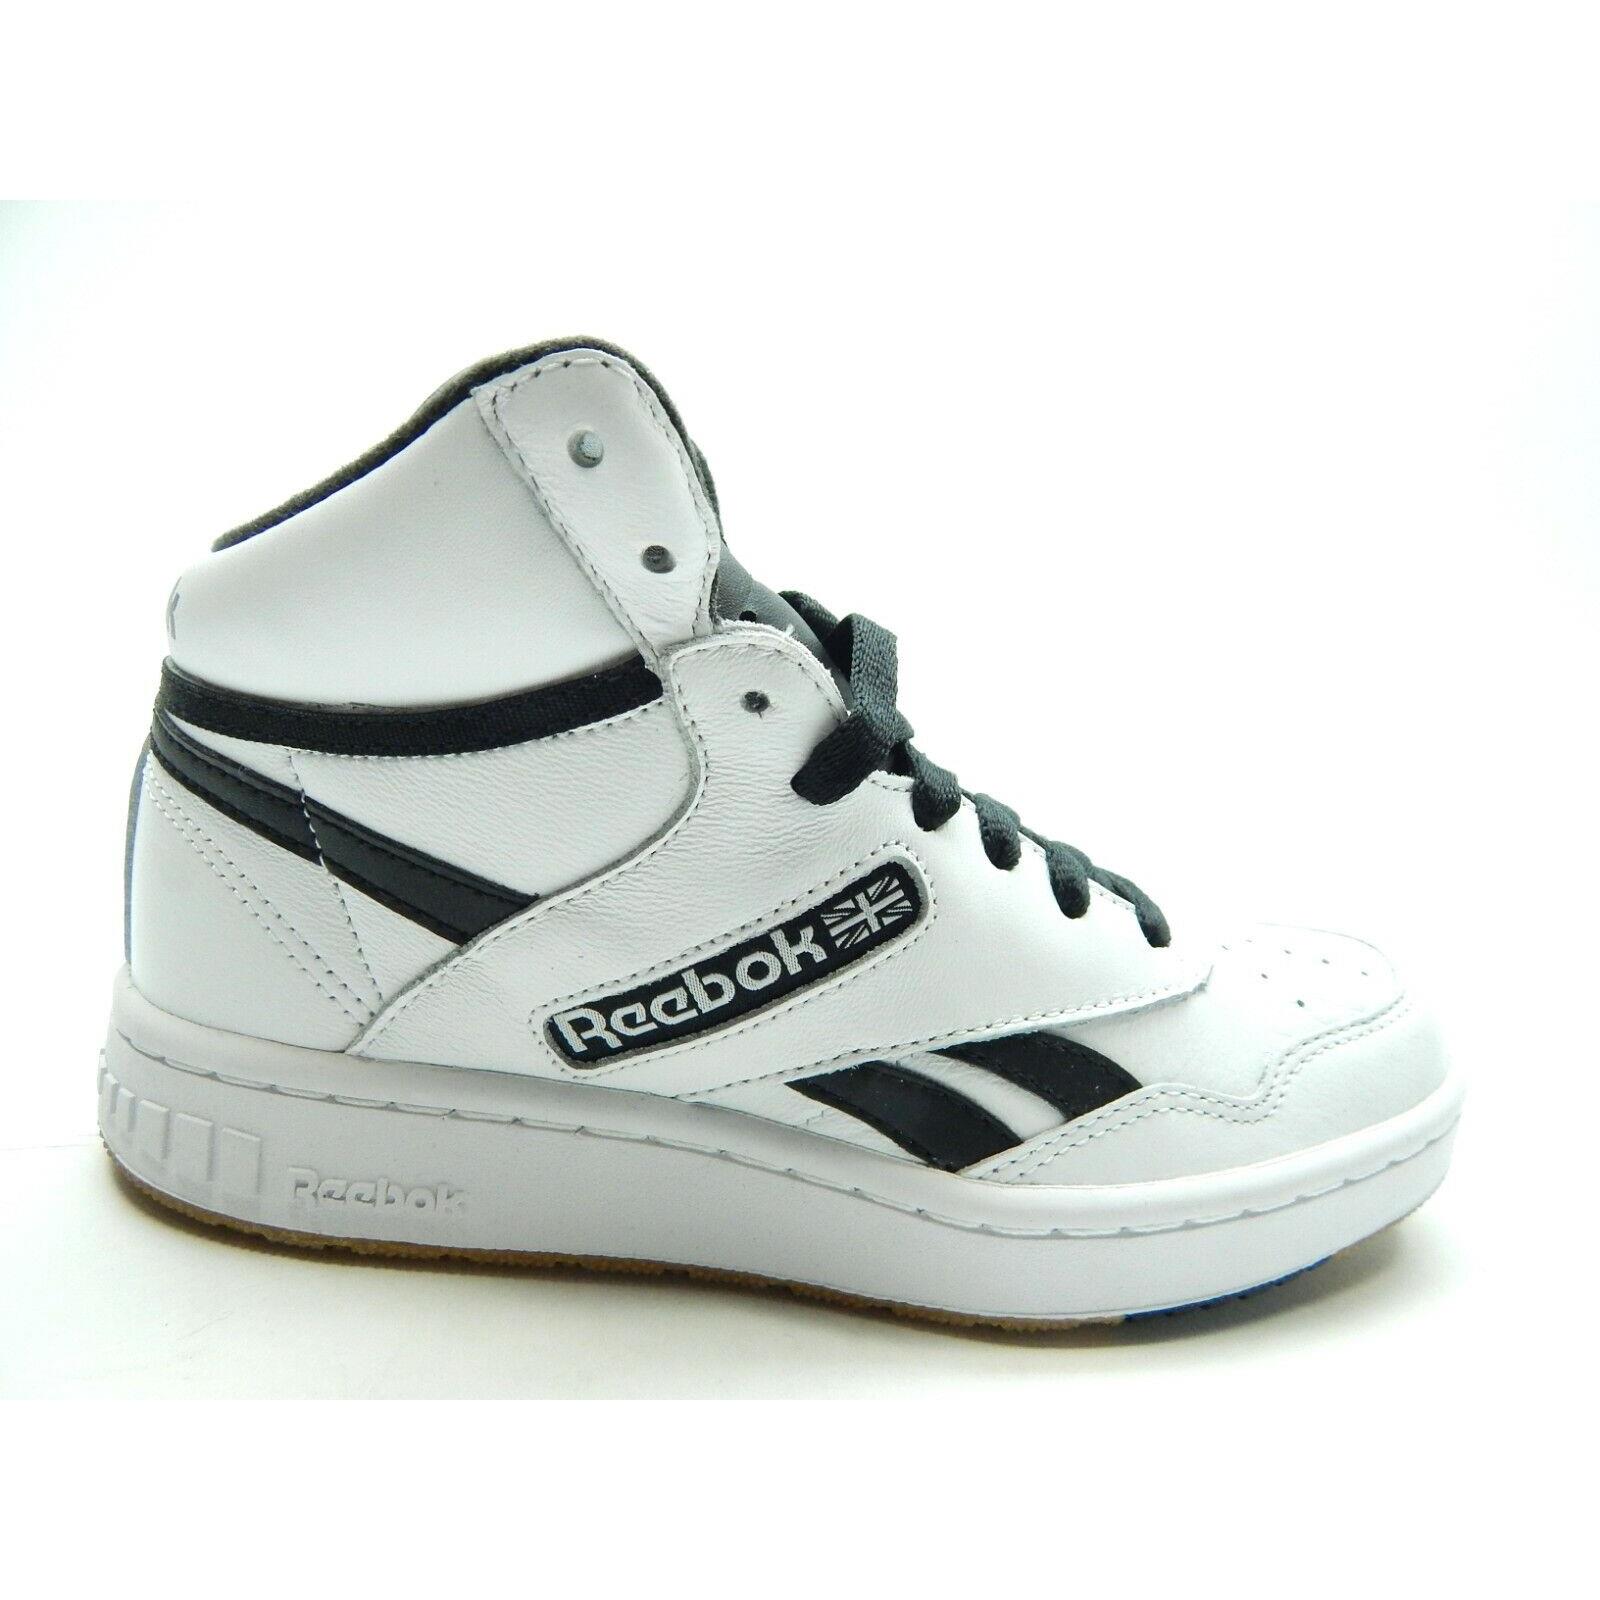 Reebok BB4600 White Black Basketball EH2135 Men Shoes Size 4.5